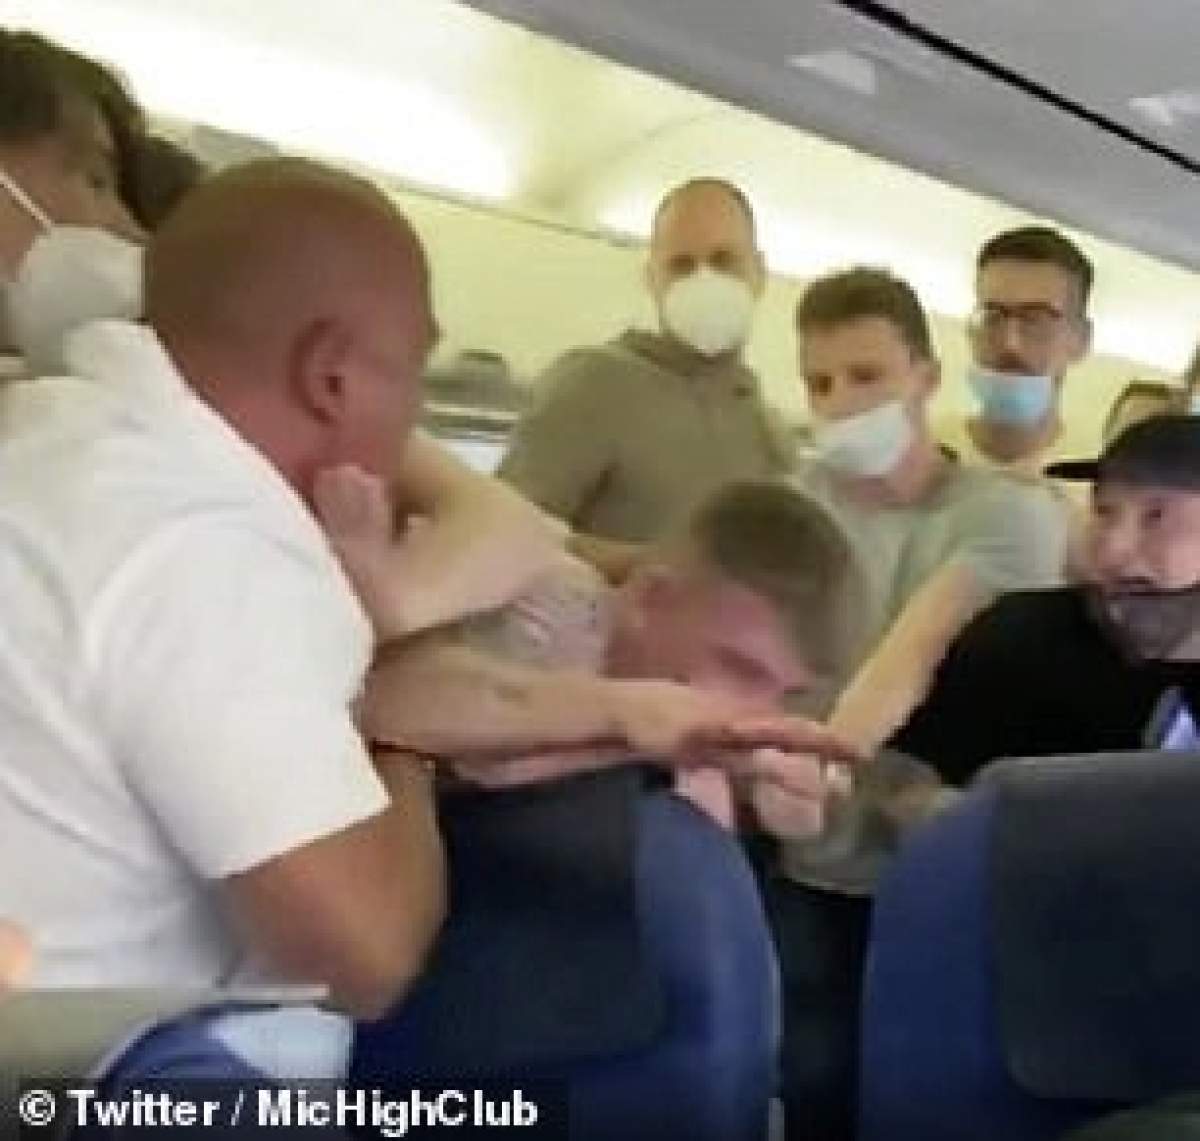 Scene incredibile într-un avion! Pasagerii s-au luat la bătaie, din cauza măștii de protecție / VIDEO